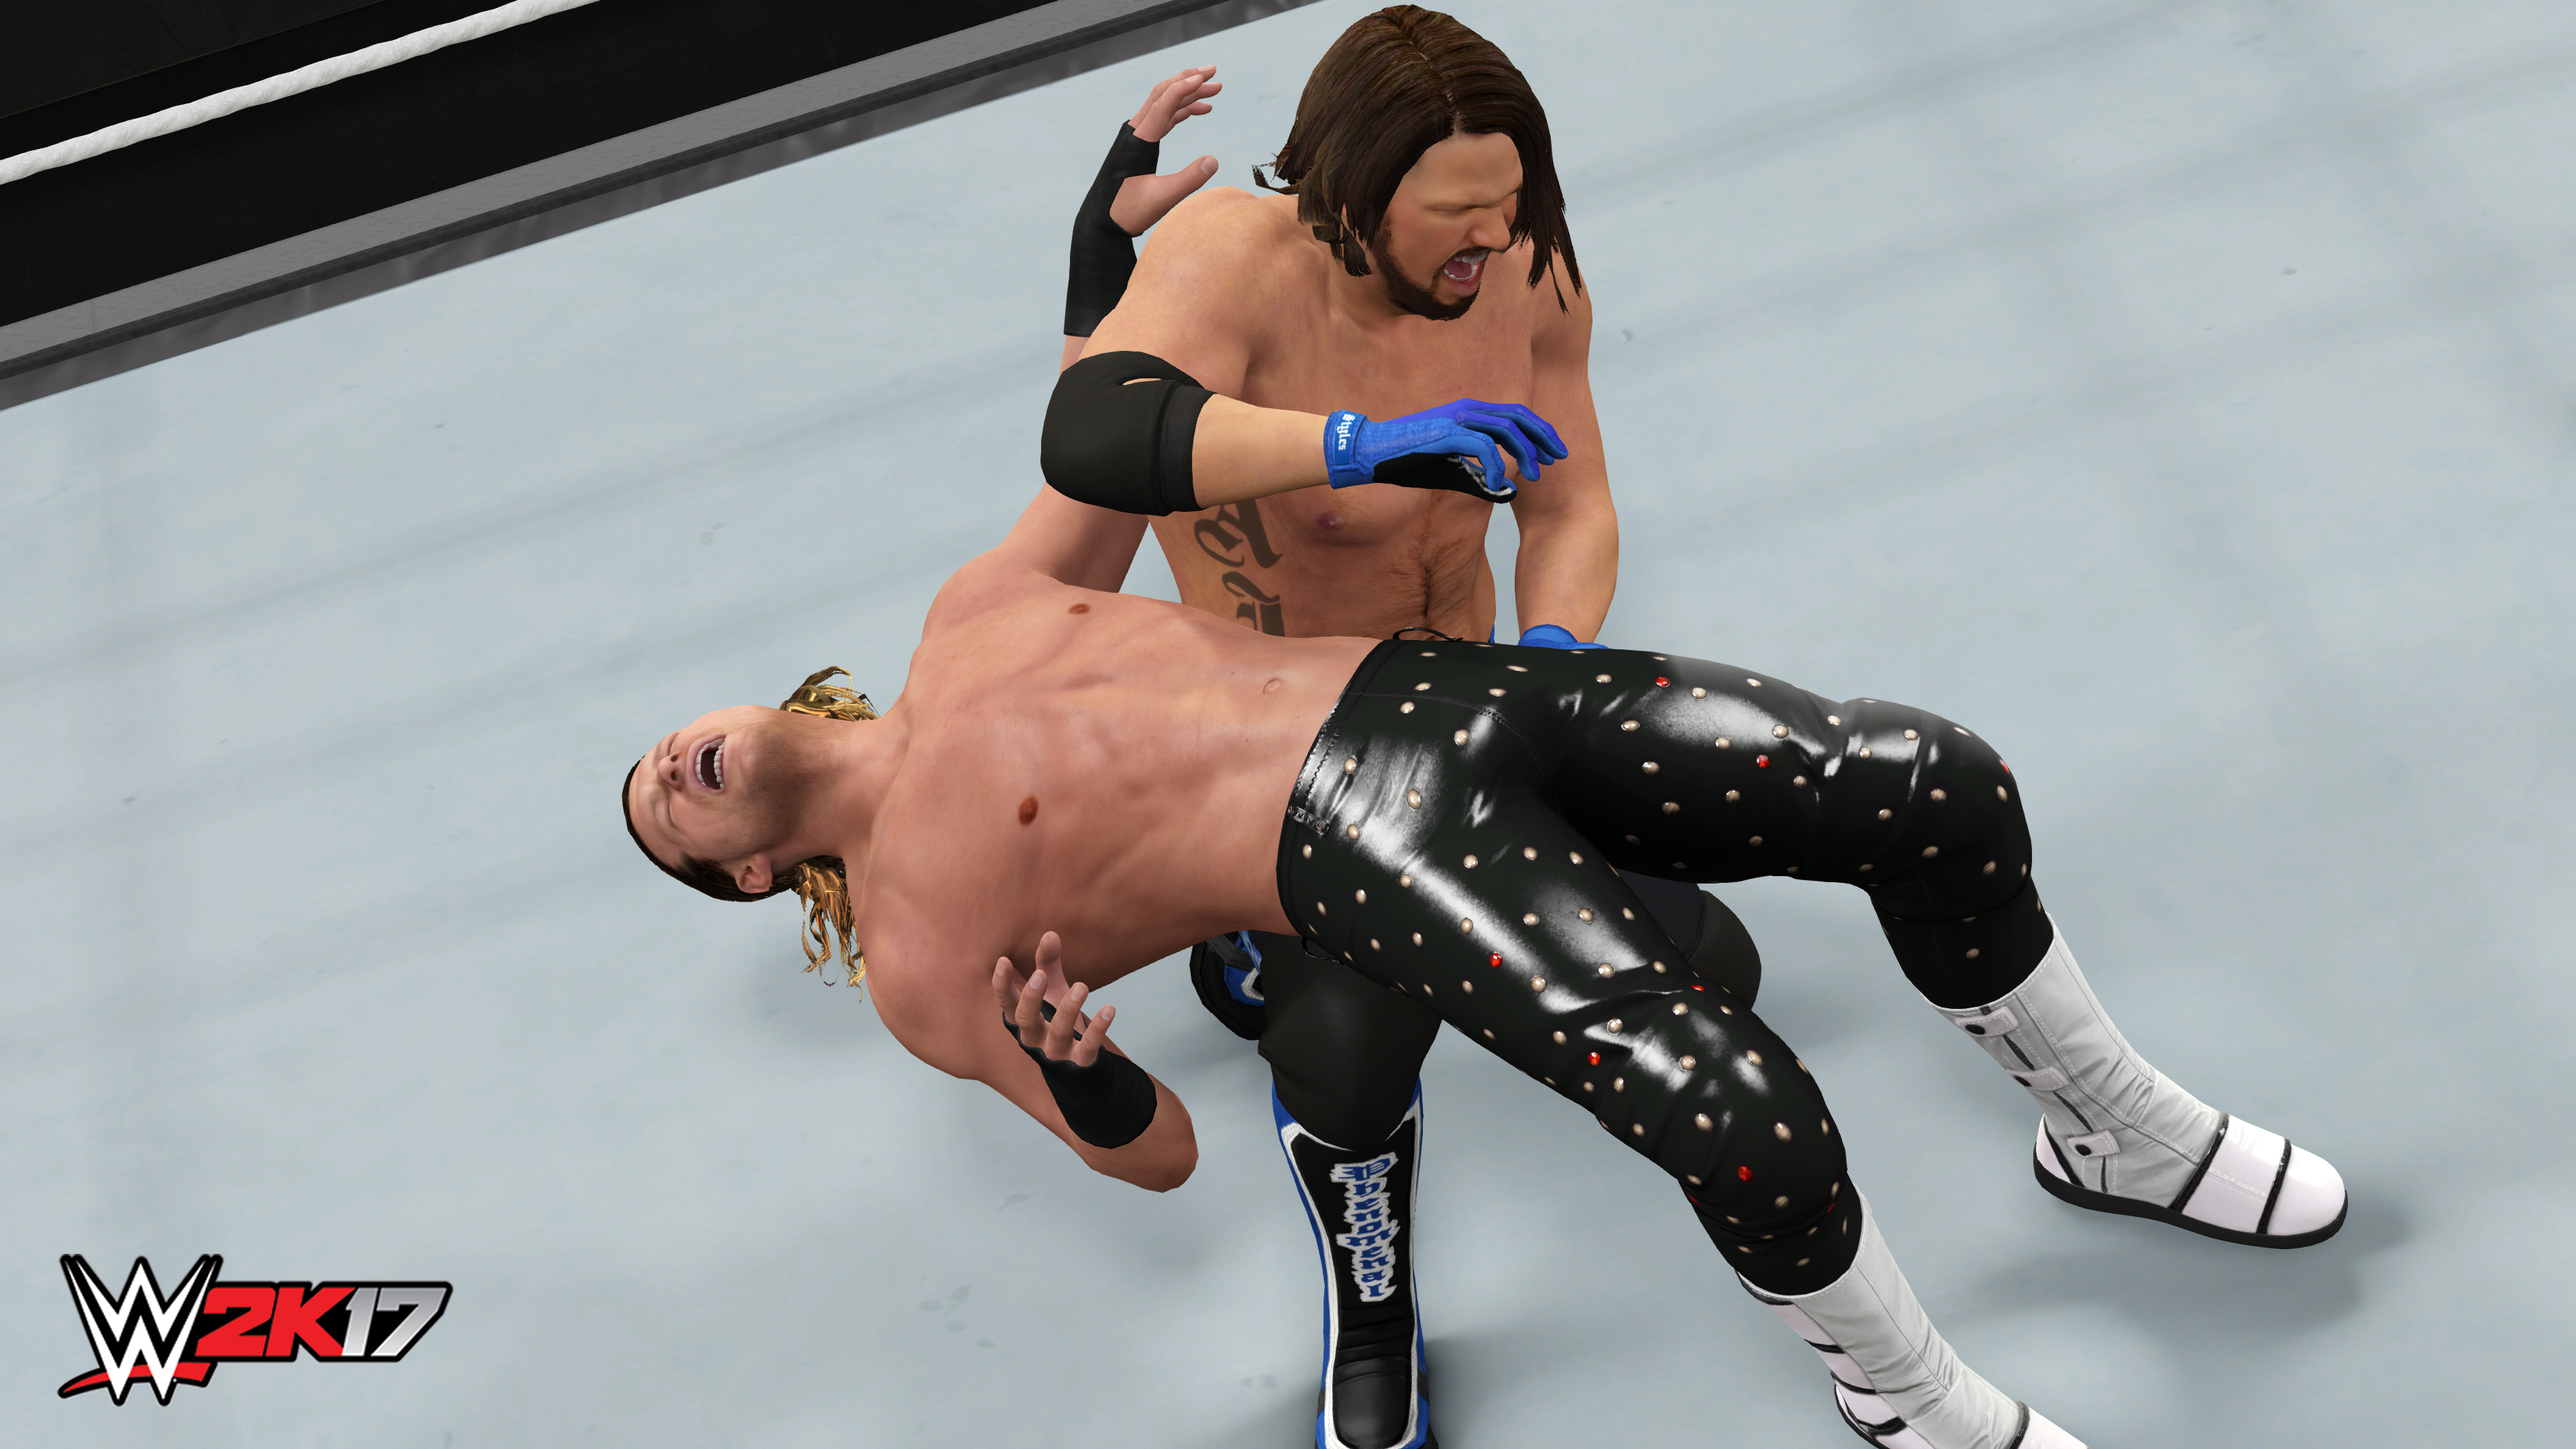 WWE 2K17 screenshot